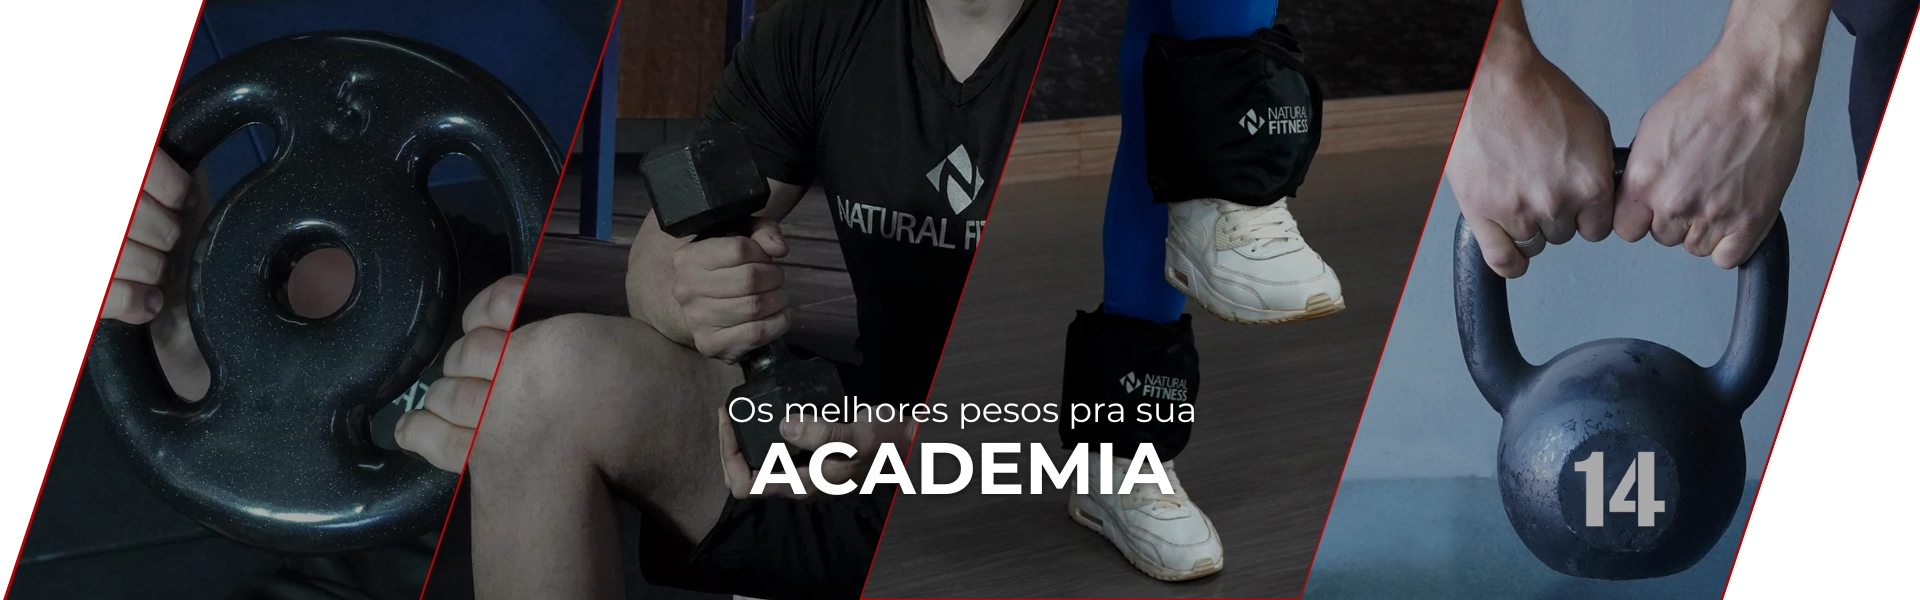 Academia / pesos